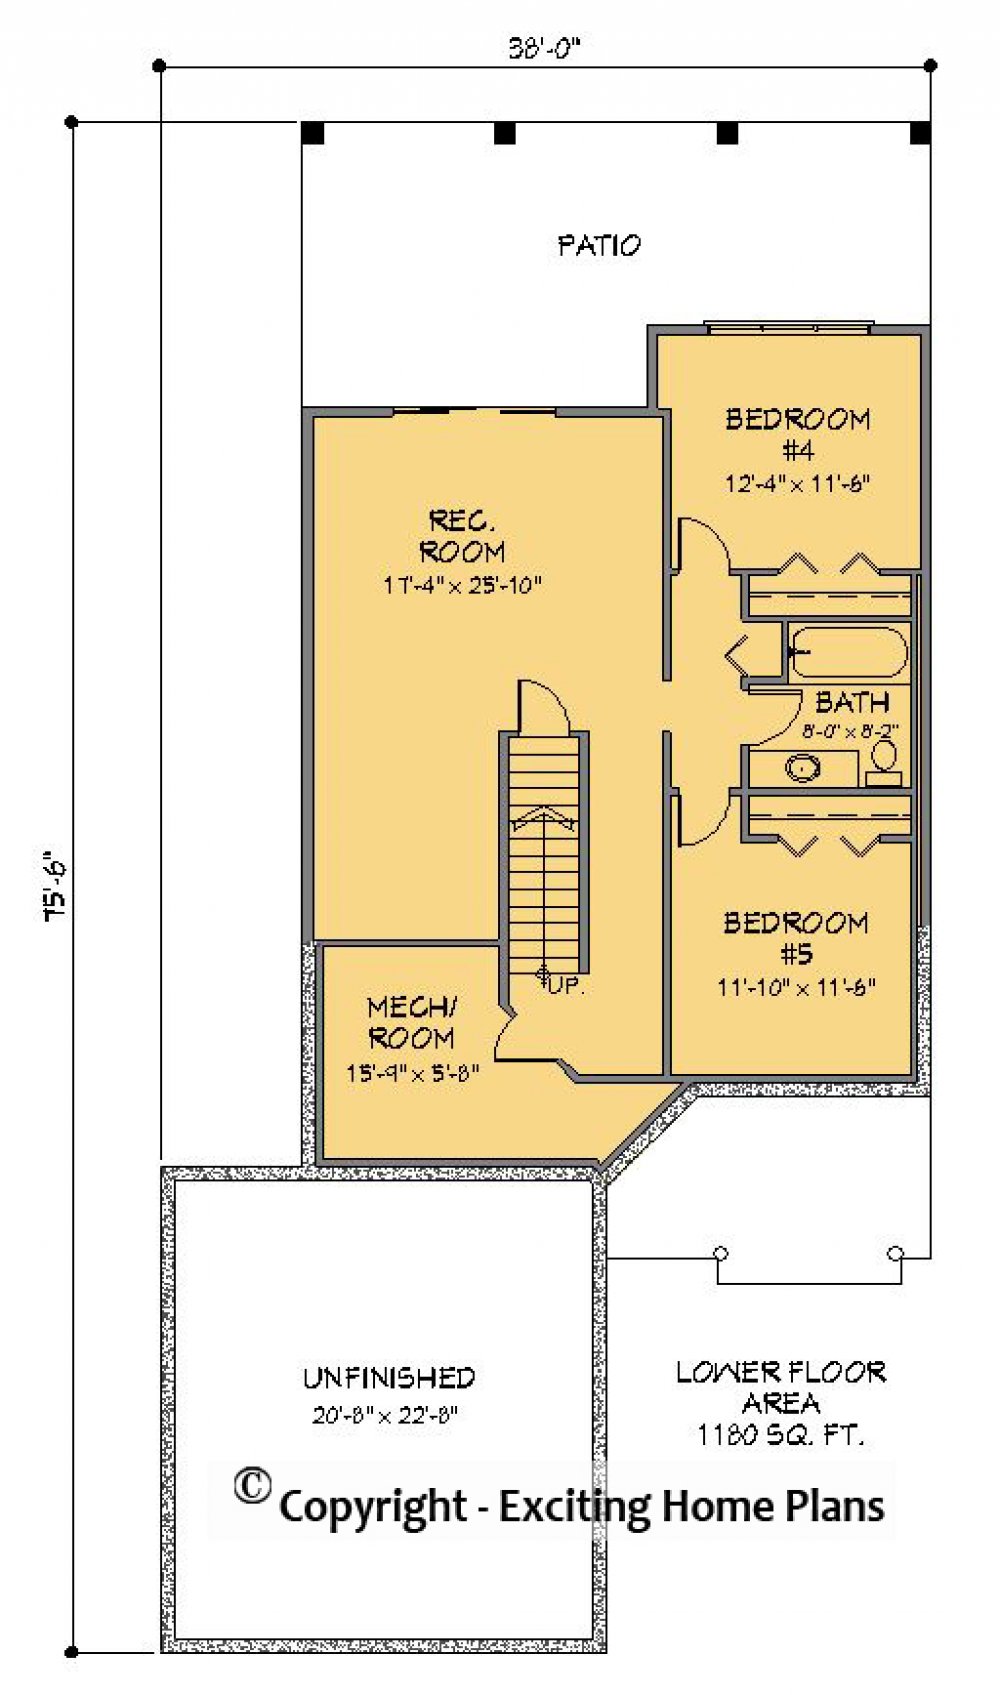 House Plan E1446-10 Lower Floor Plan